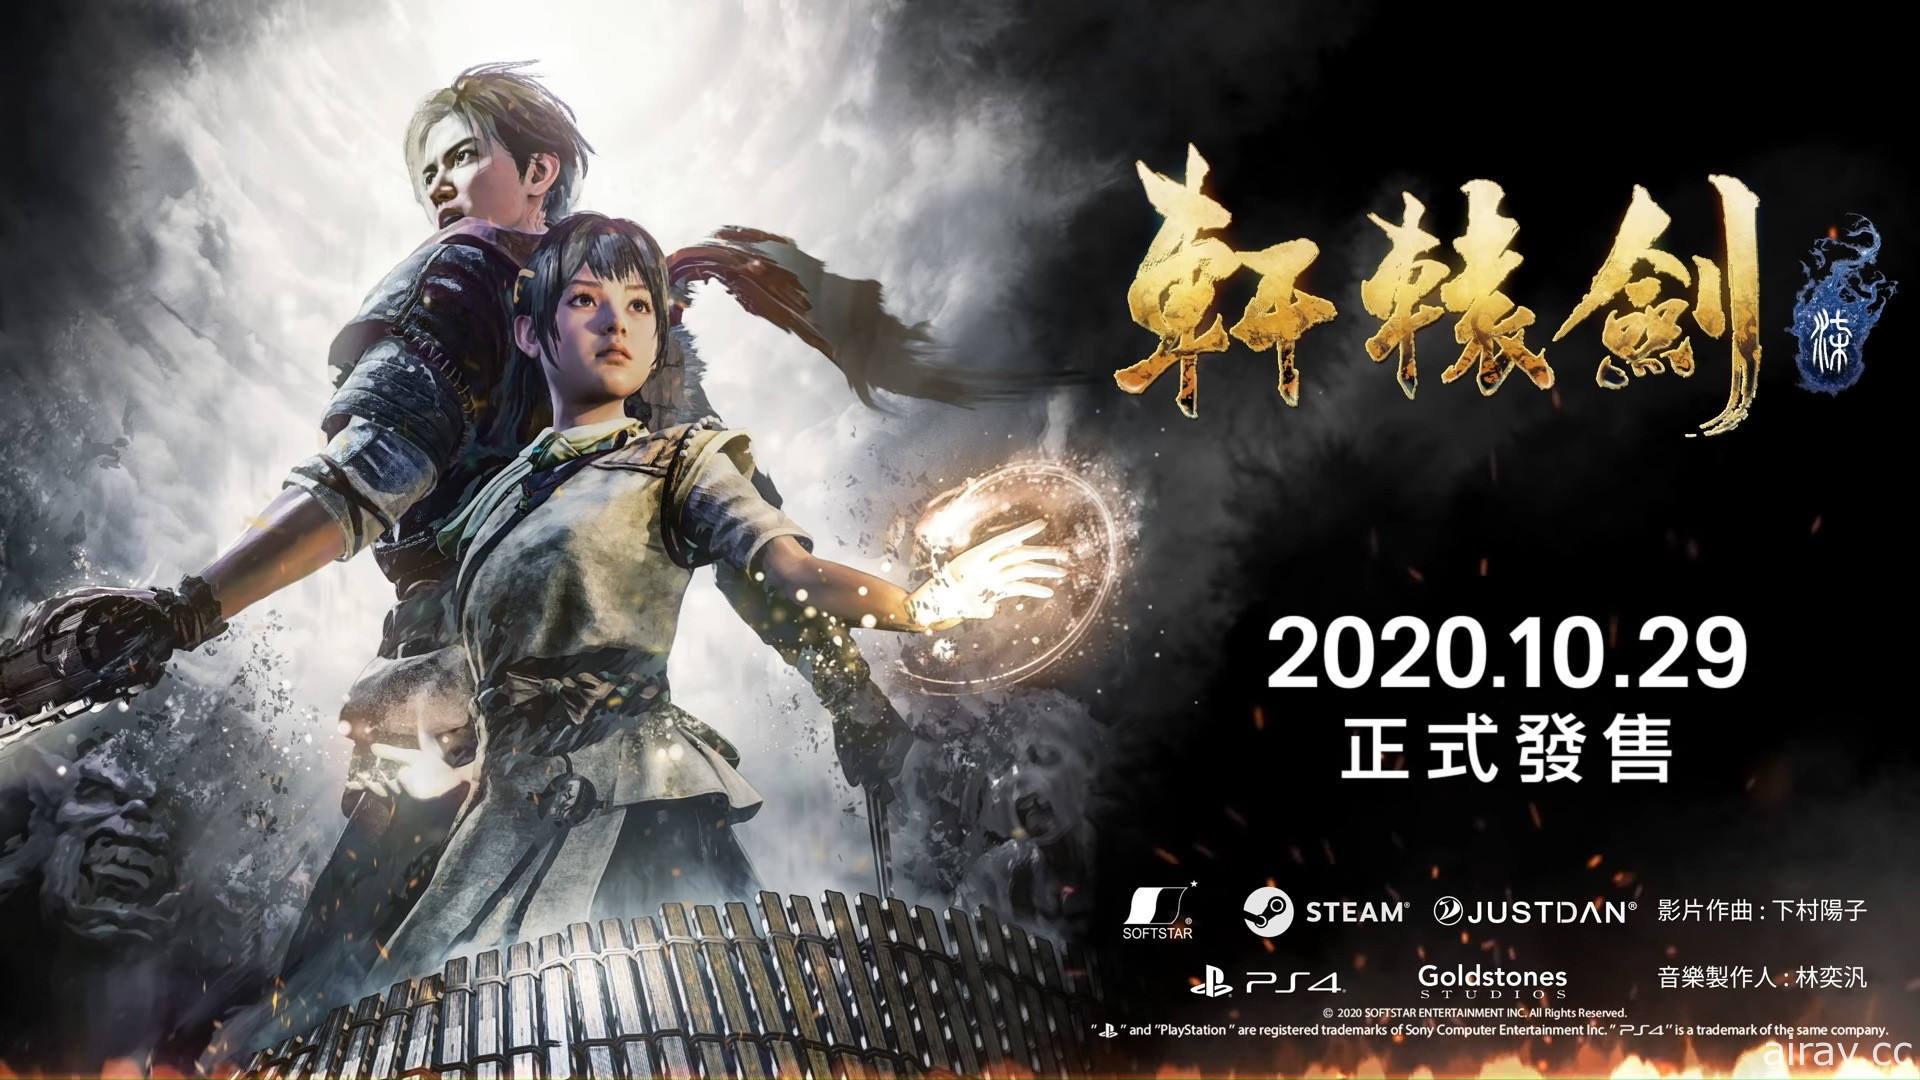 新作《轩辕剑柒》释出第三部预告影片 确定 10 月 29 日发售